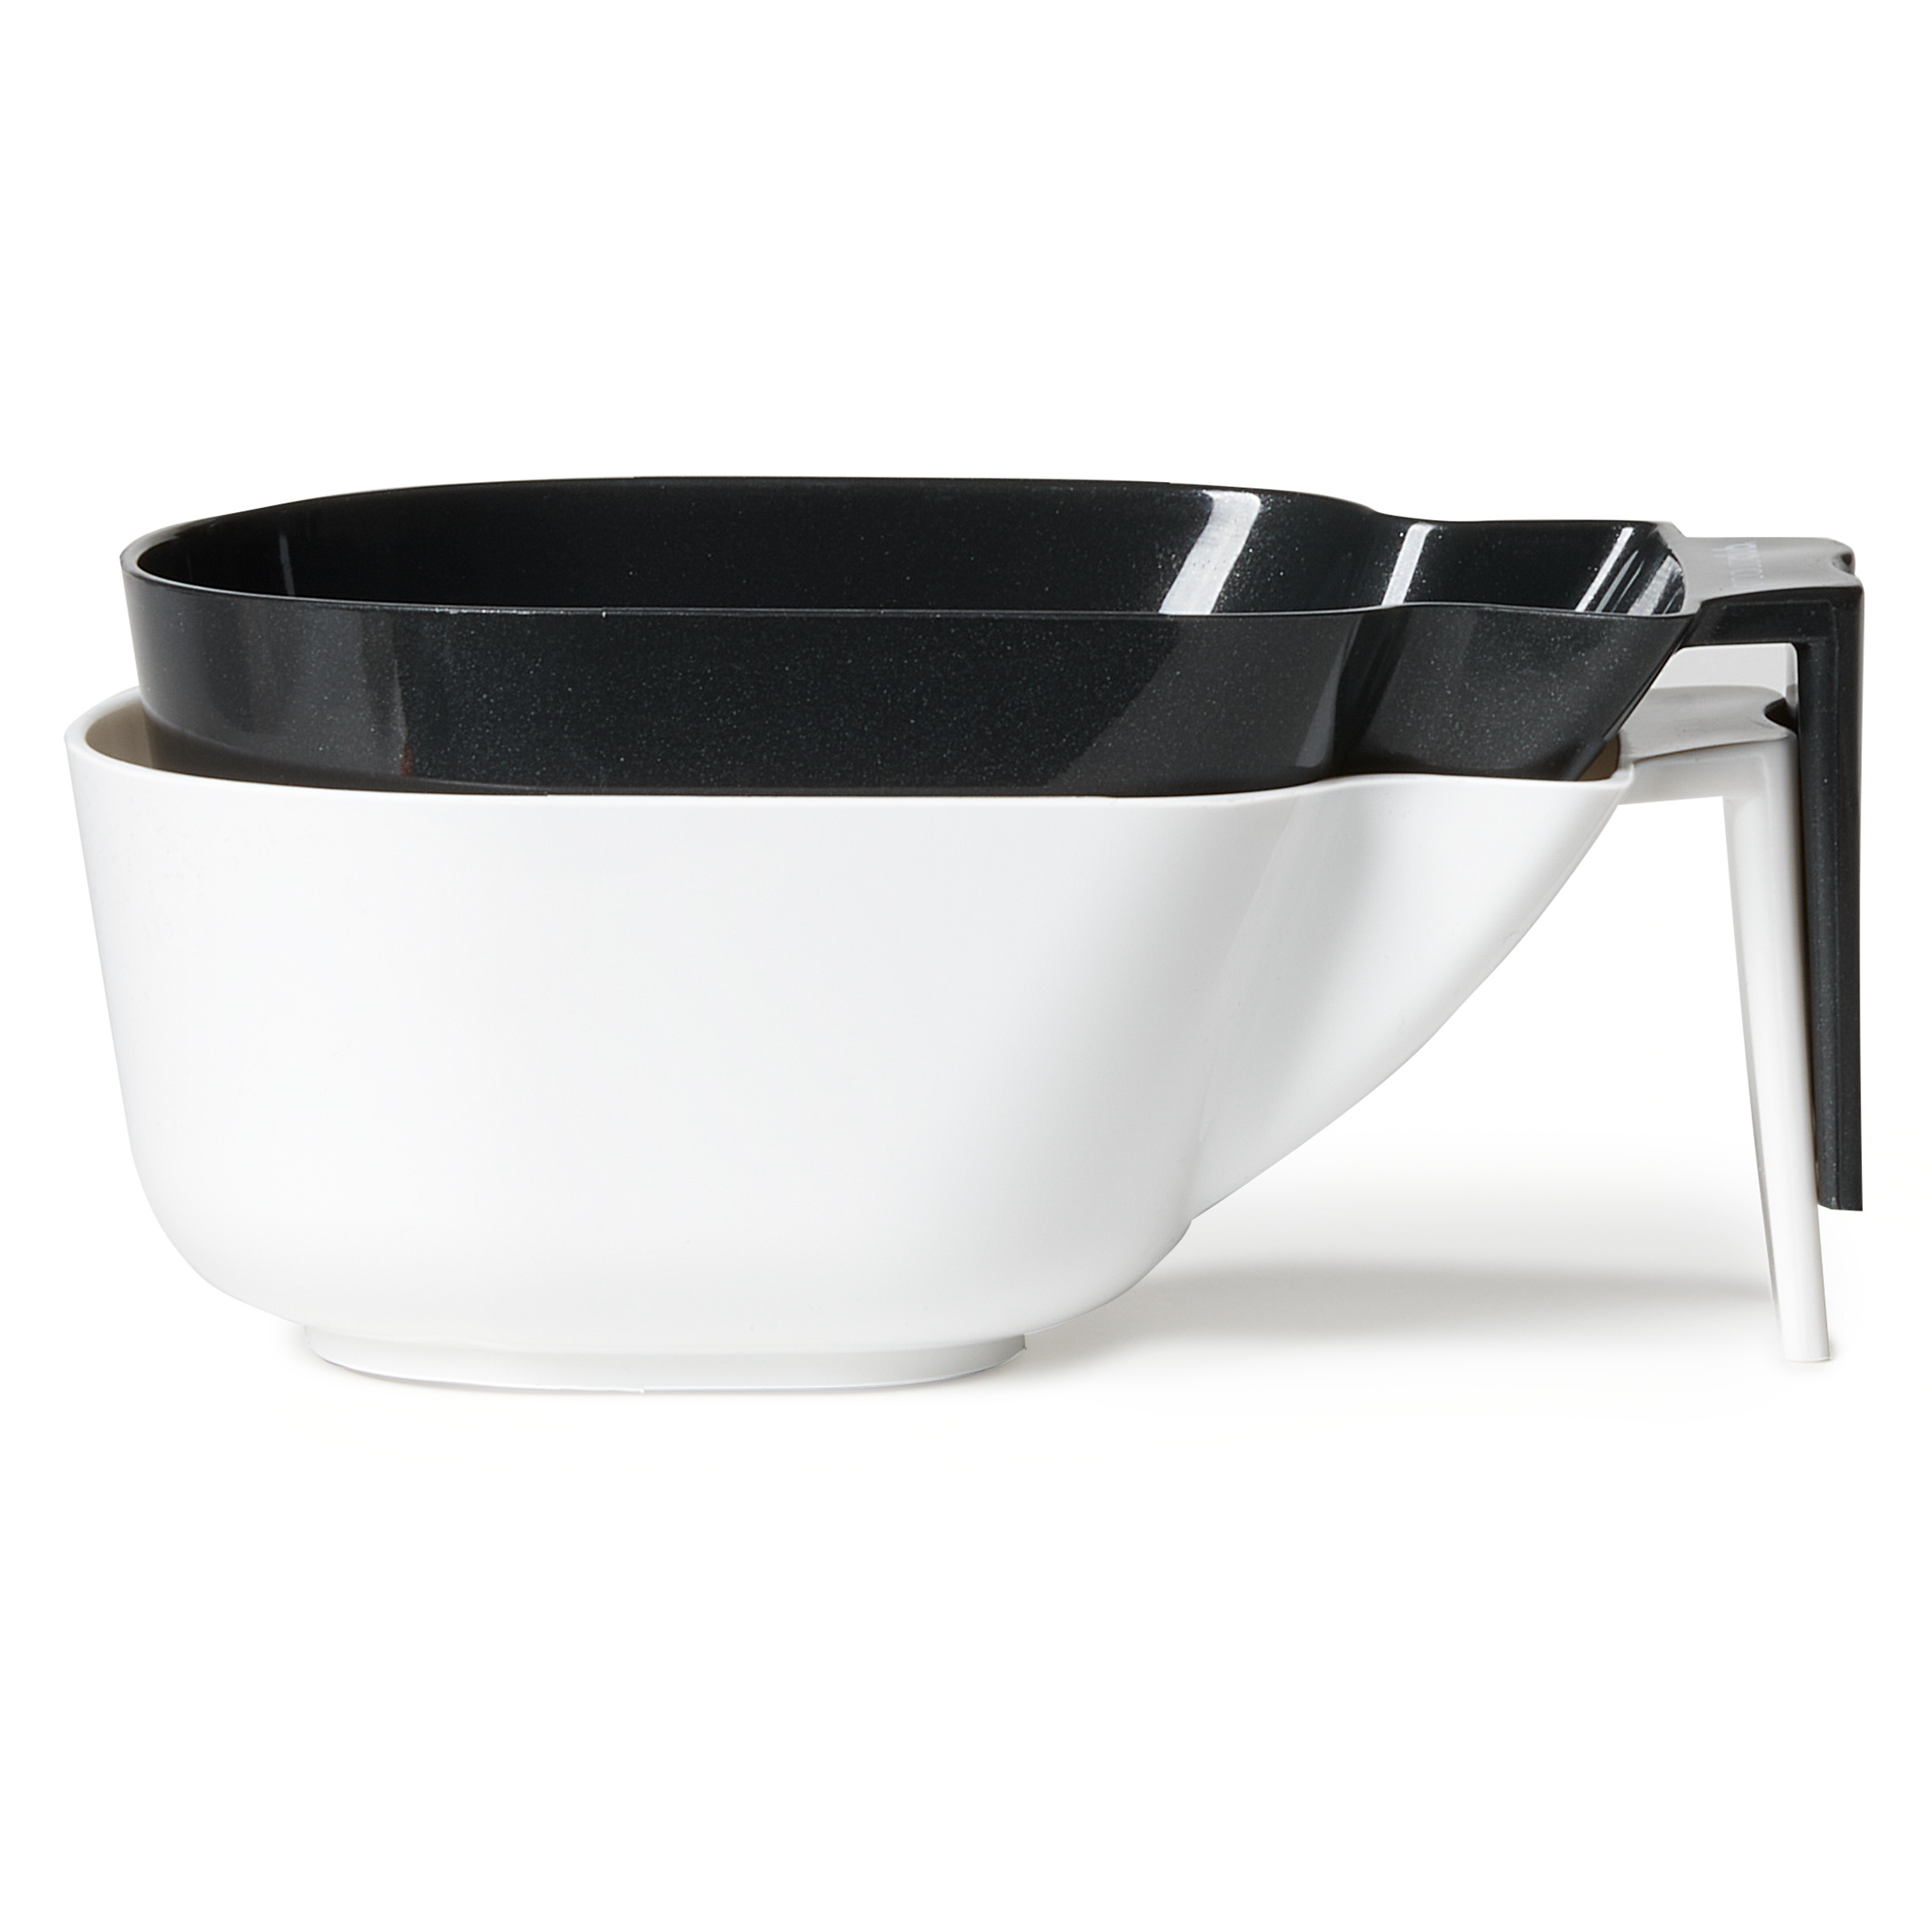 Black & White Color Bowls